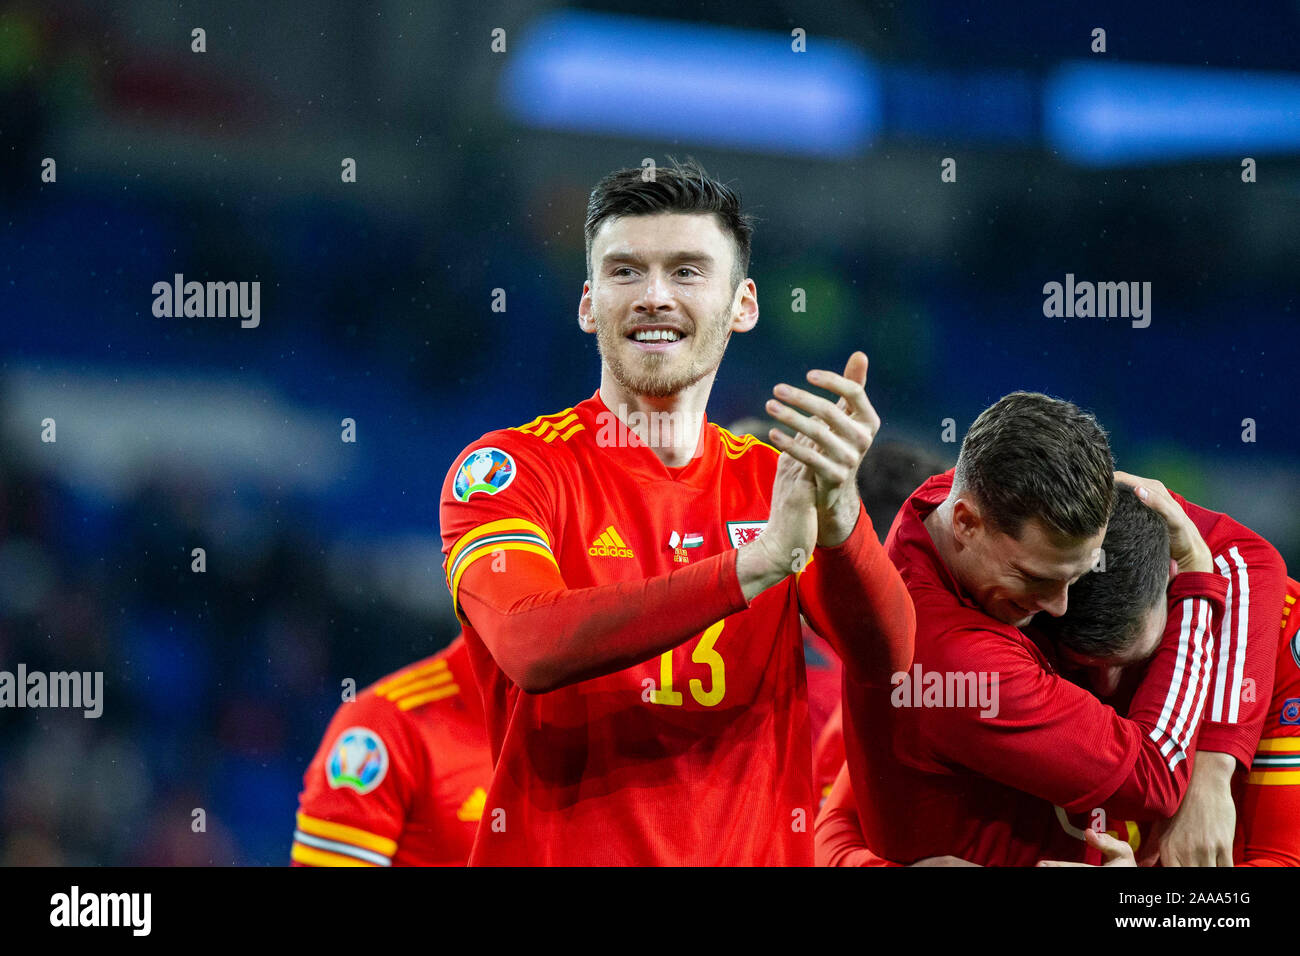 Kieffer Moore de galles claps les fans après l'UEFA Euro 2020 match de qualification entre le Pays de Galle et la Hongrie, novembre 2019. Banque D'Images